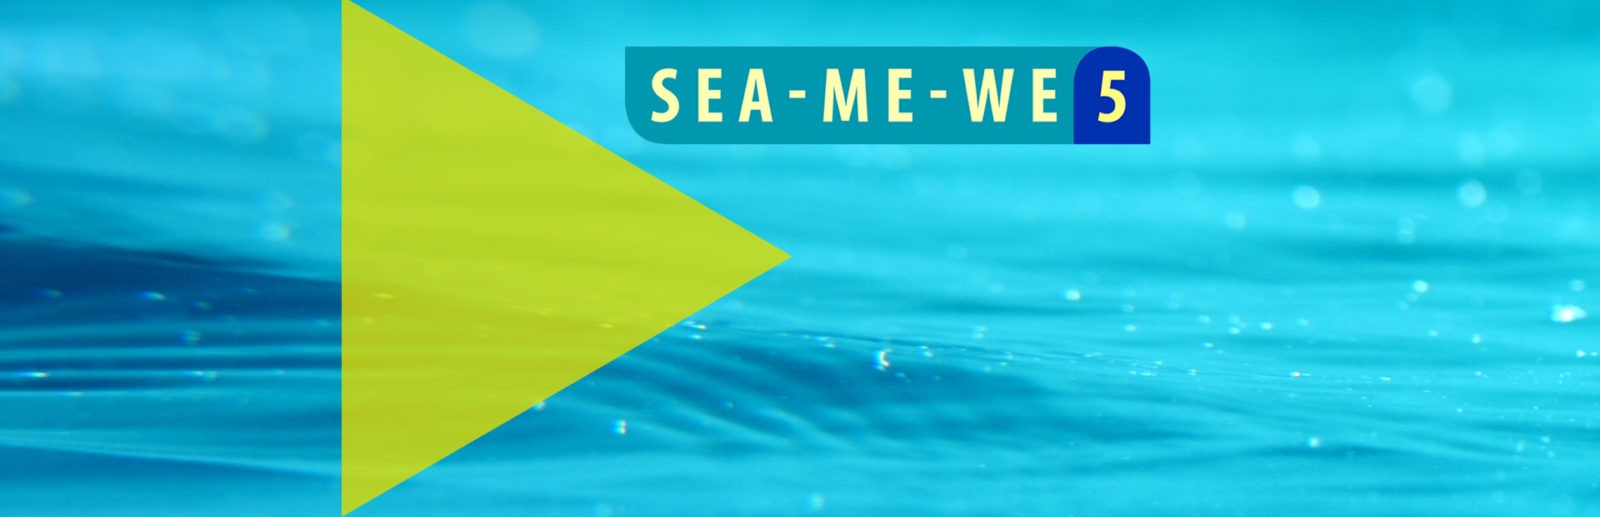 SEA-ME-WE 5